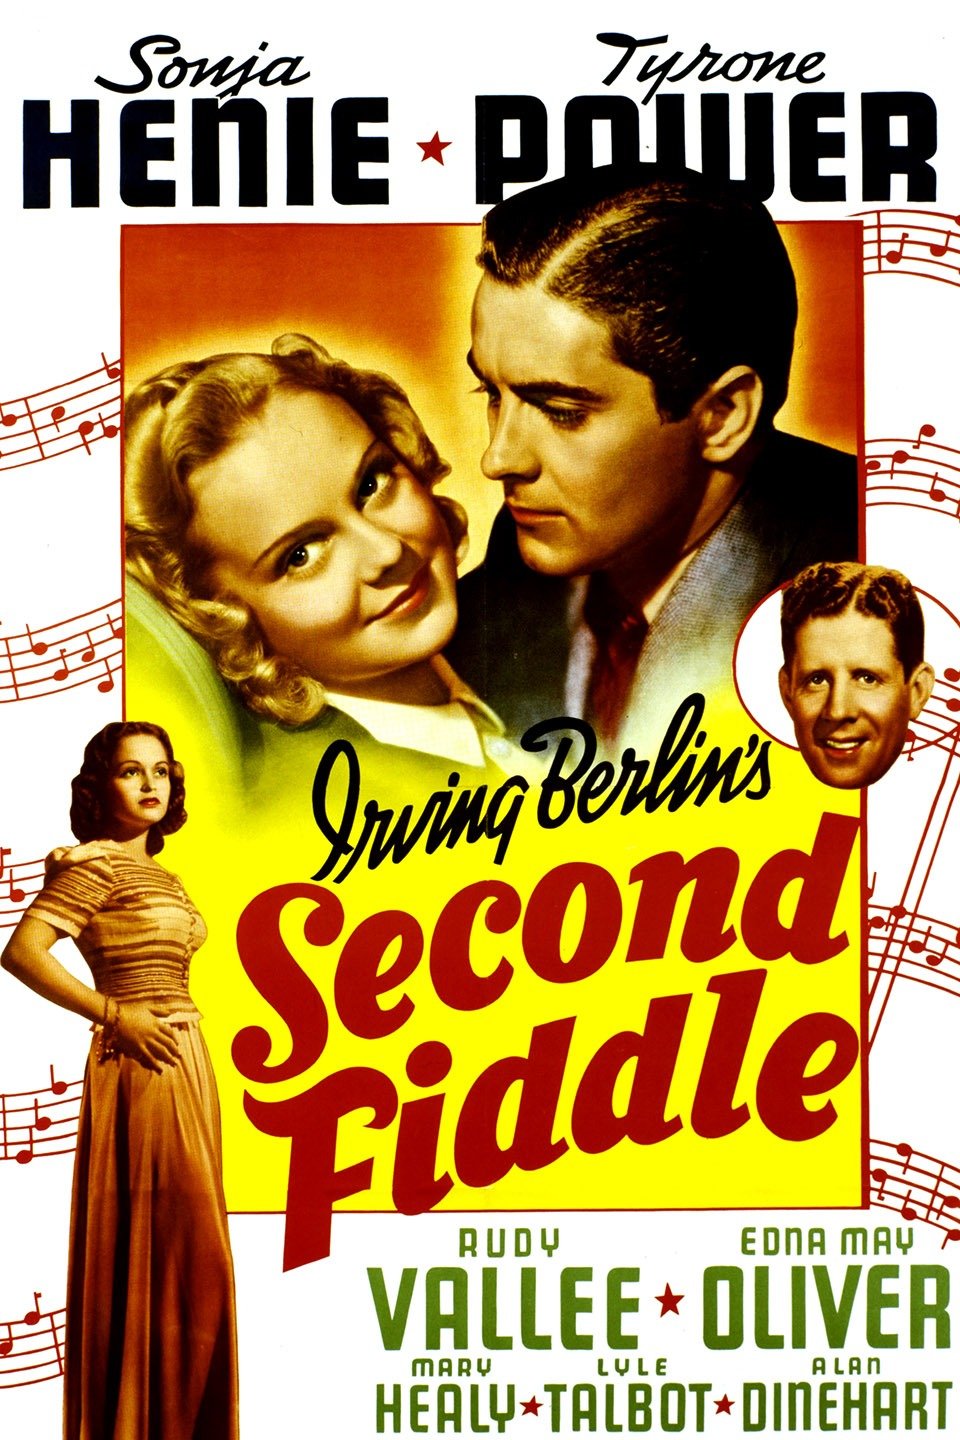  فیلم سینمایی Second Fiddle با حضور Mary Healy، Tyrone Power، Rudy Vallee و Sonja Henie